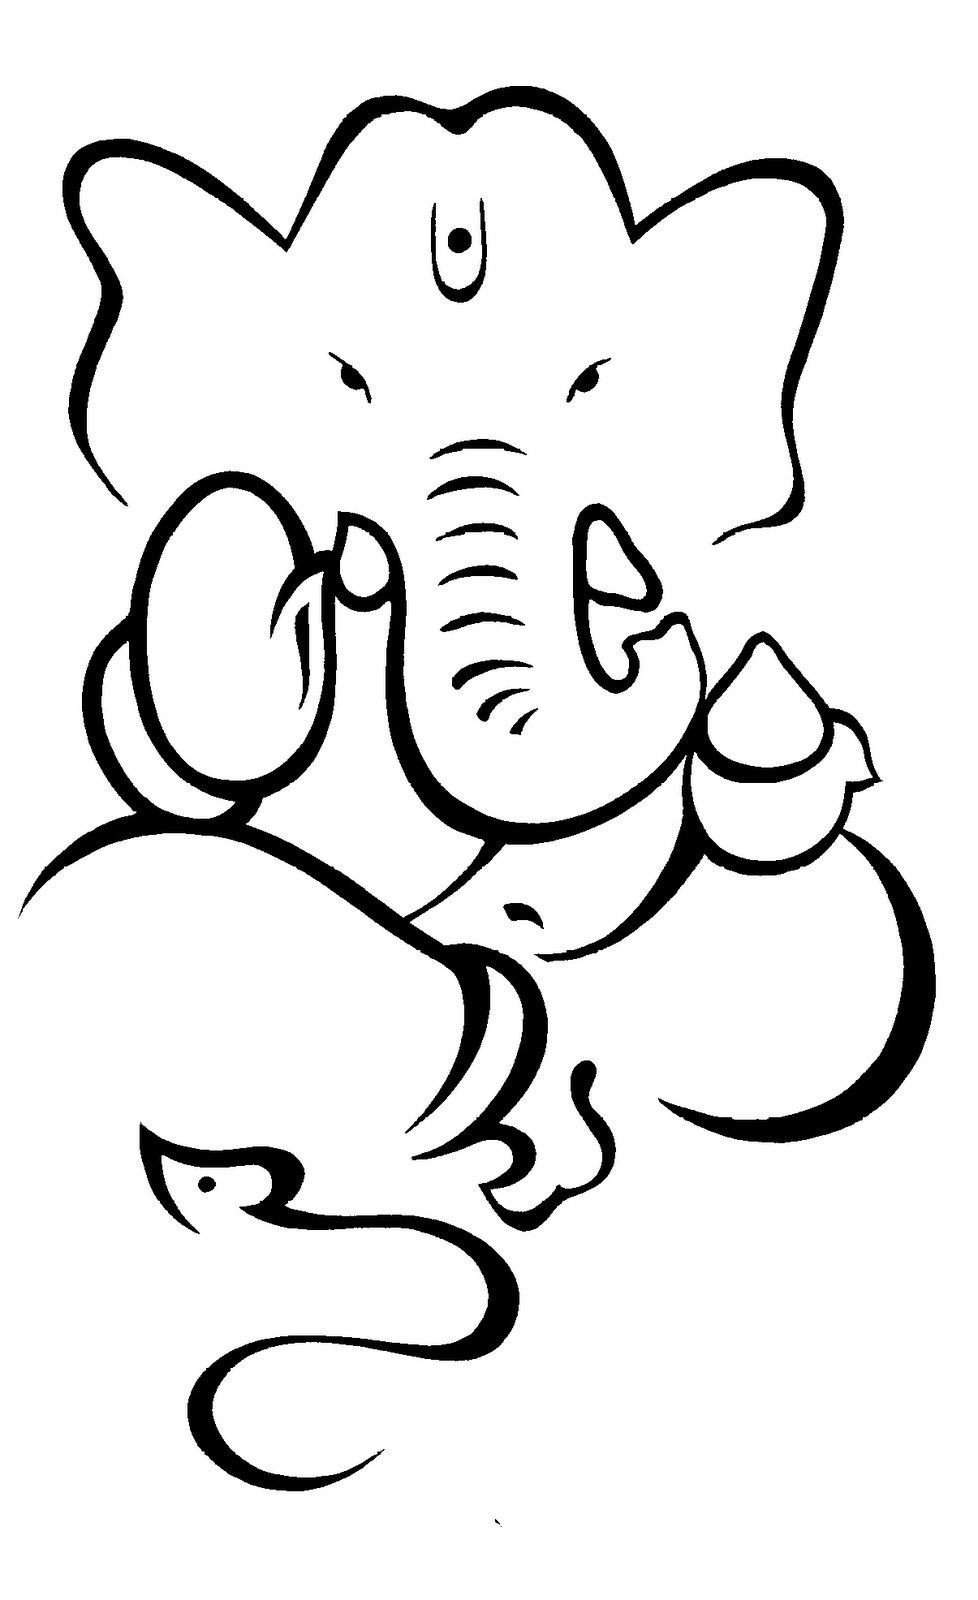 elephants clipart god